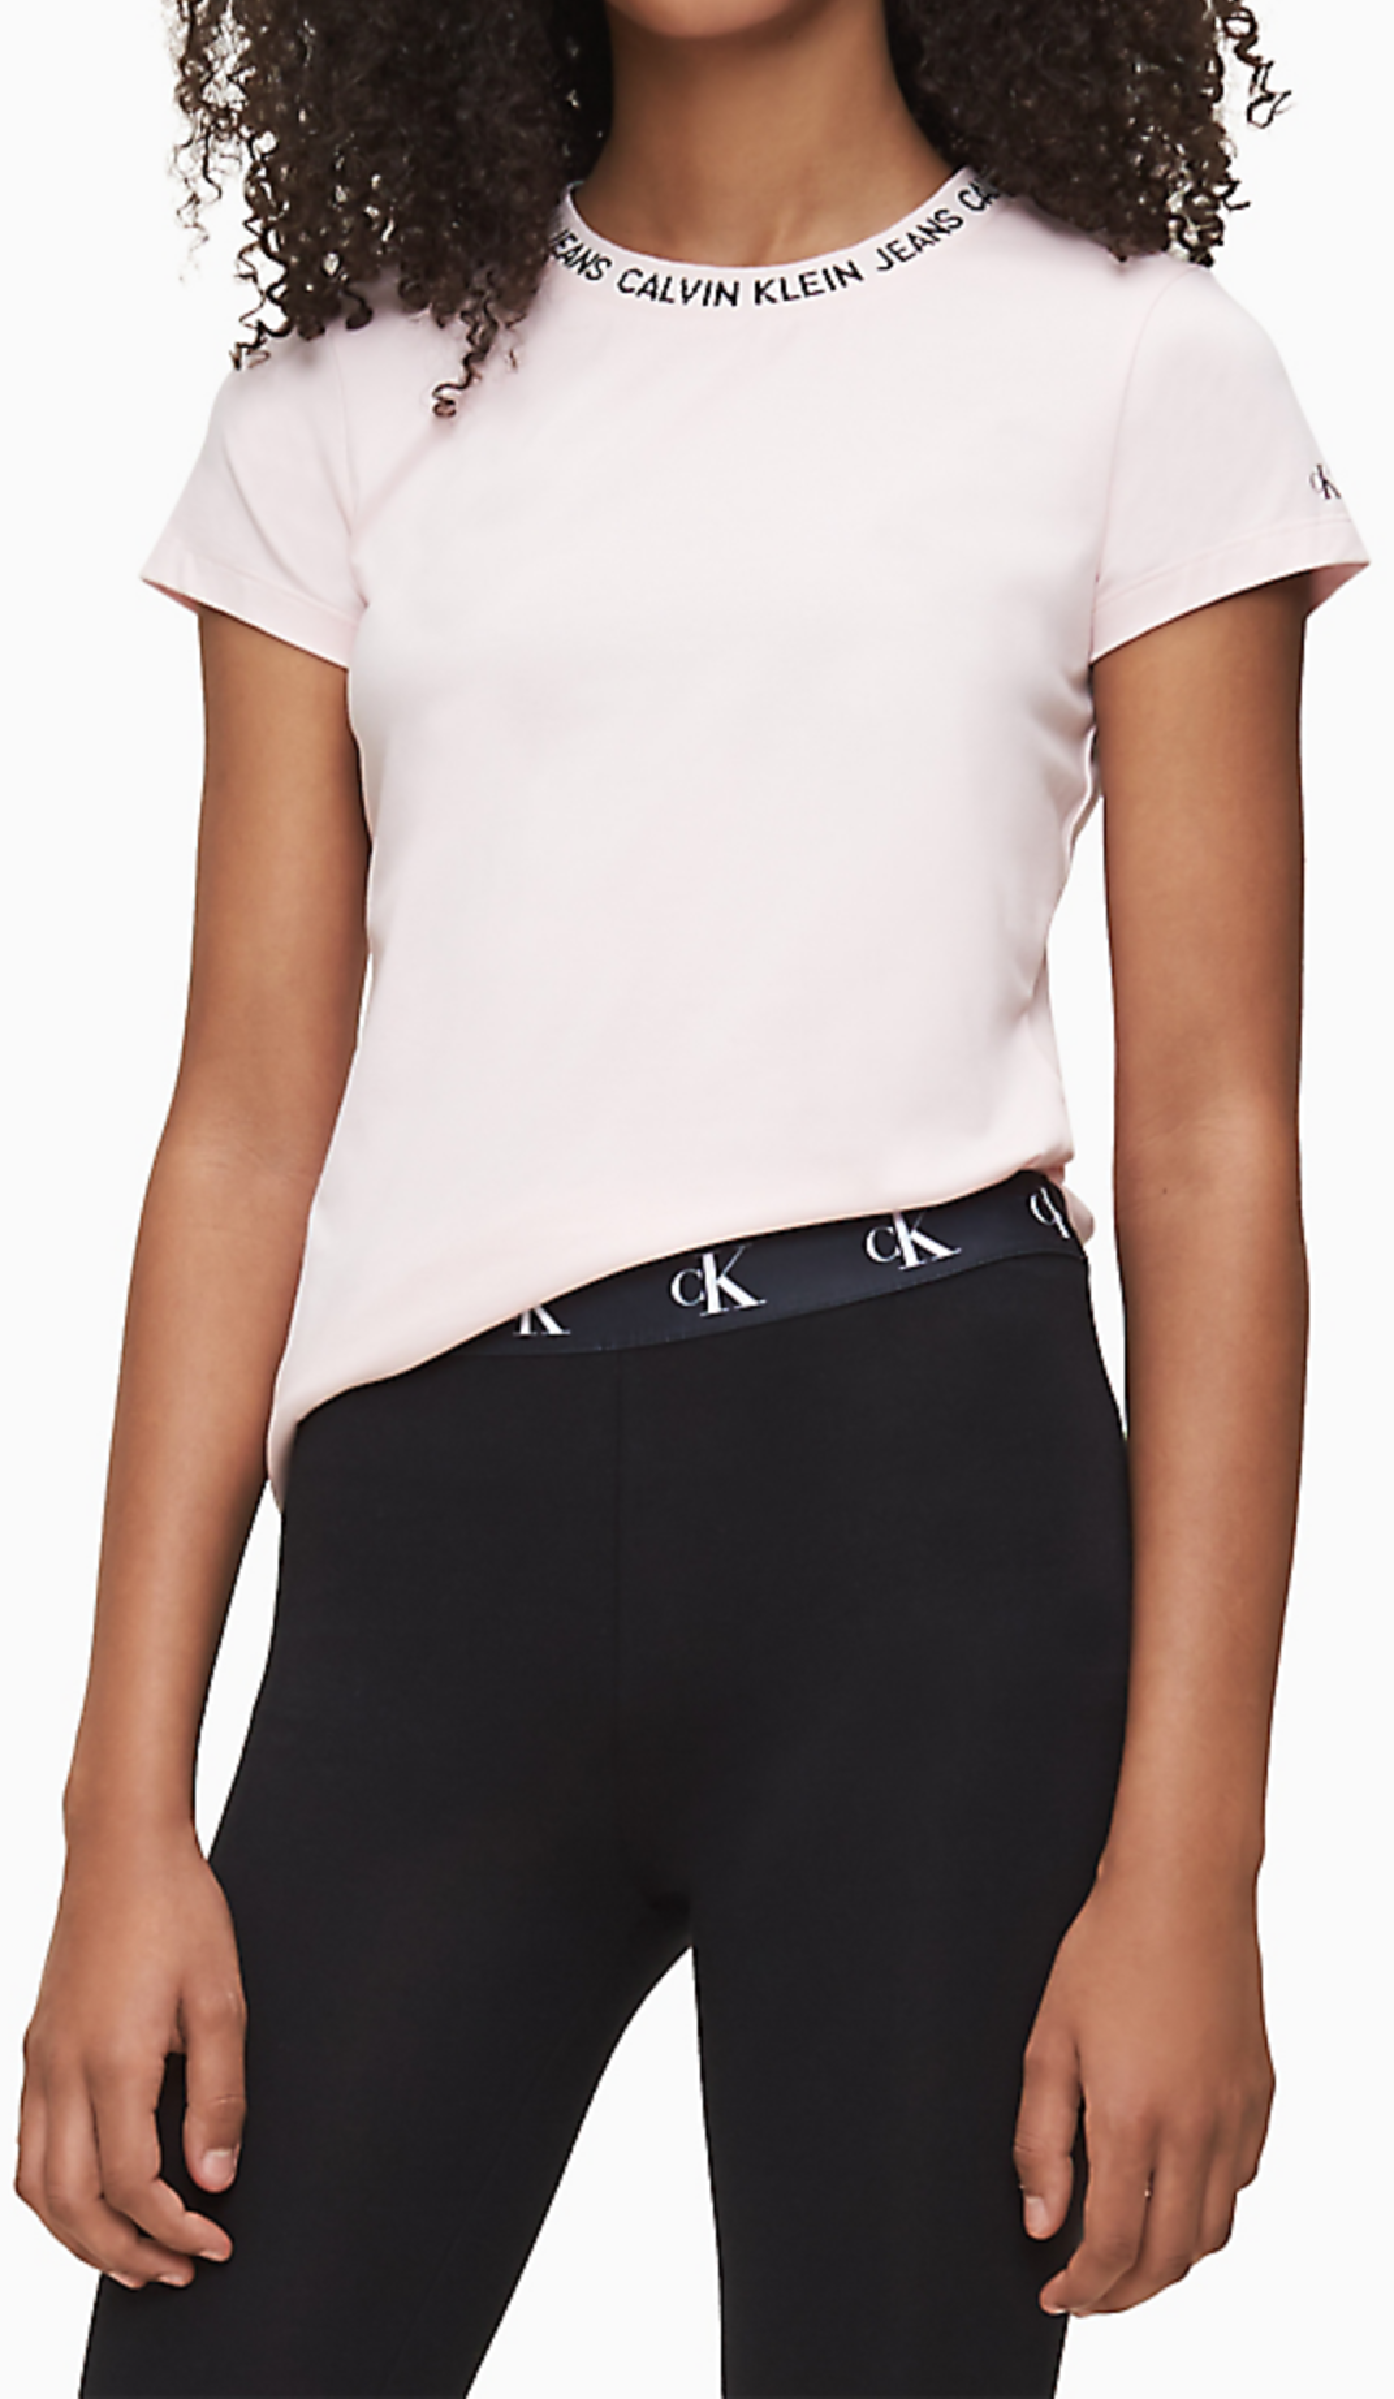 Meisjes Logo Intarsia Ss T-Shirt. van Calvin Klein in de kleur Wit in maat 176.